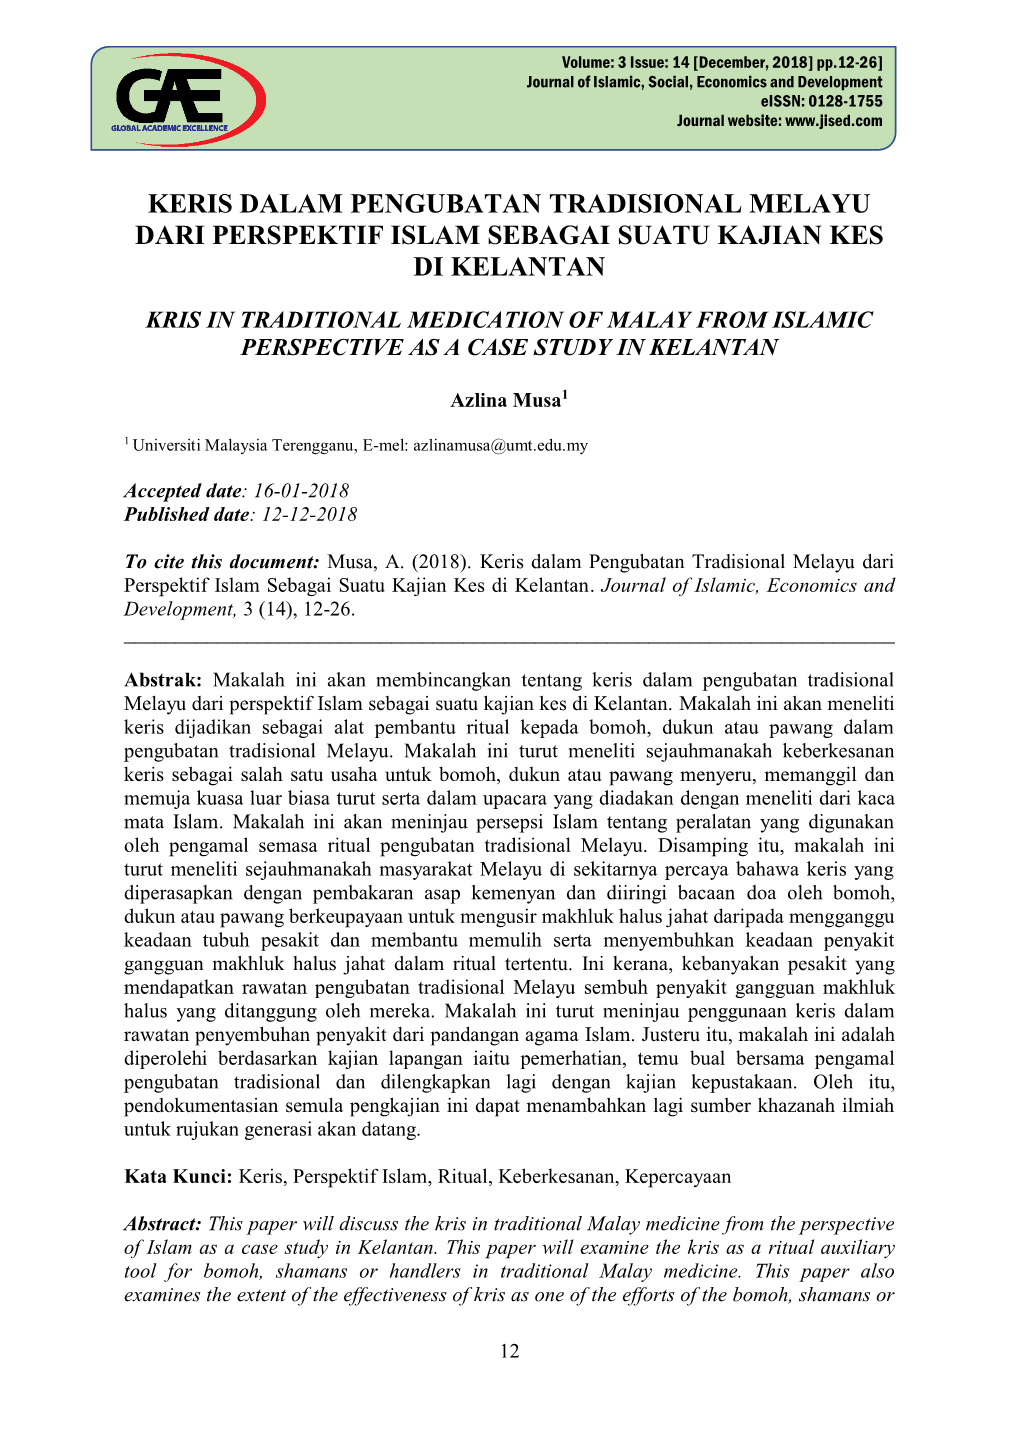 Keris Dalam Pengubatan Tradisional Melayu Dari Perspektif Islam Sebagai Suatu Kajian Kes Di Kelantan